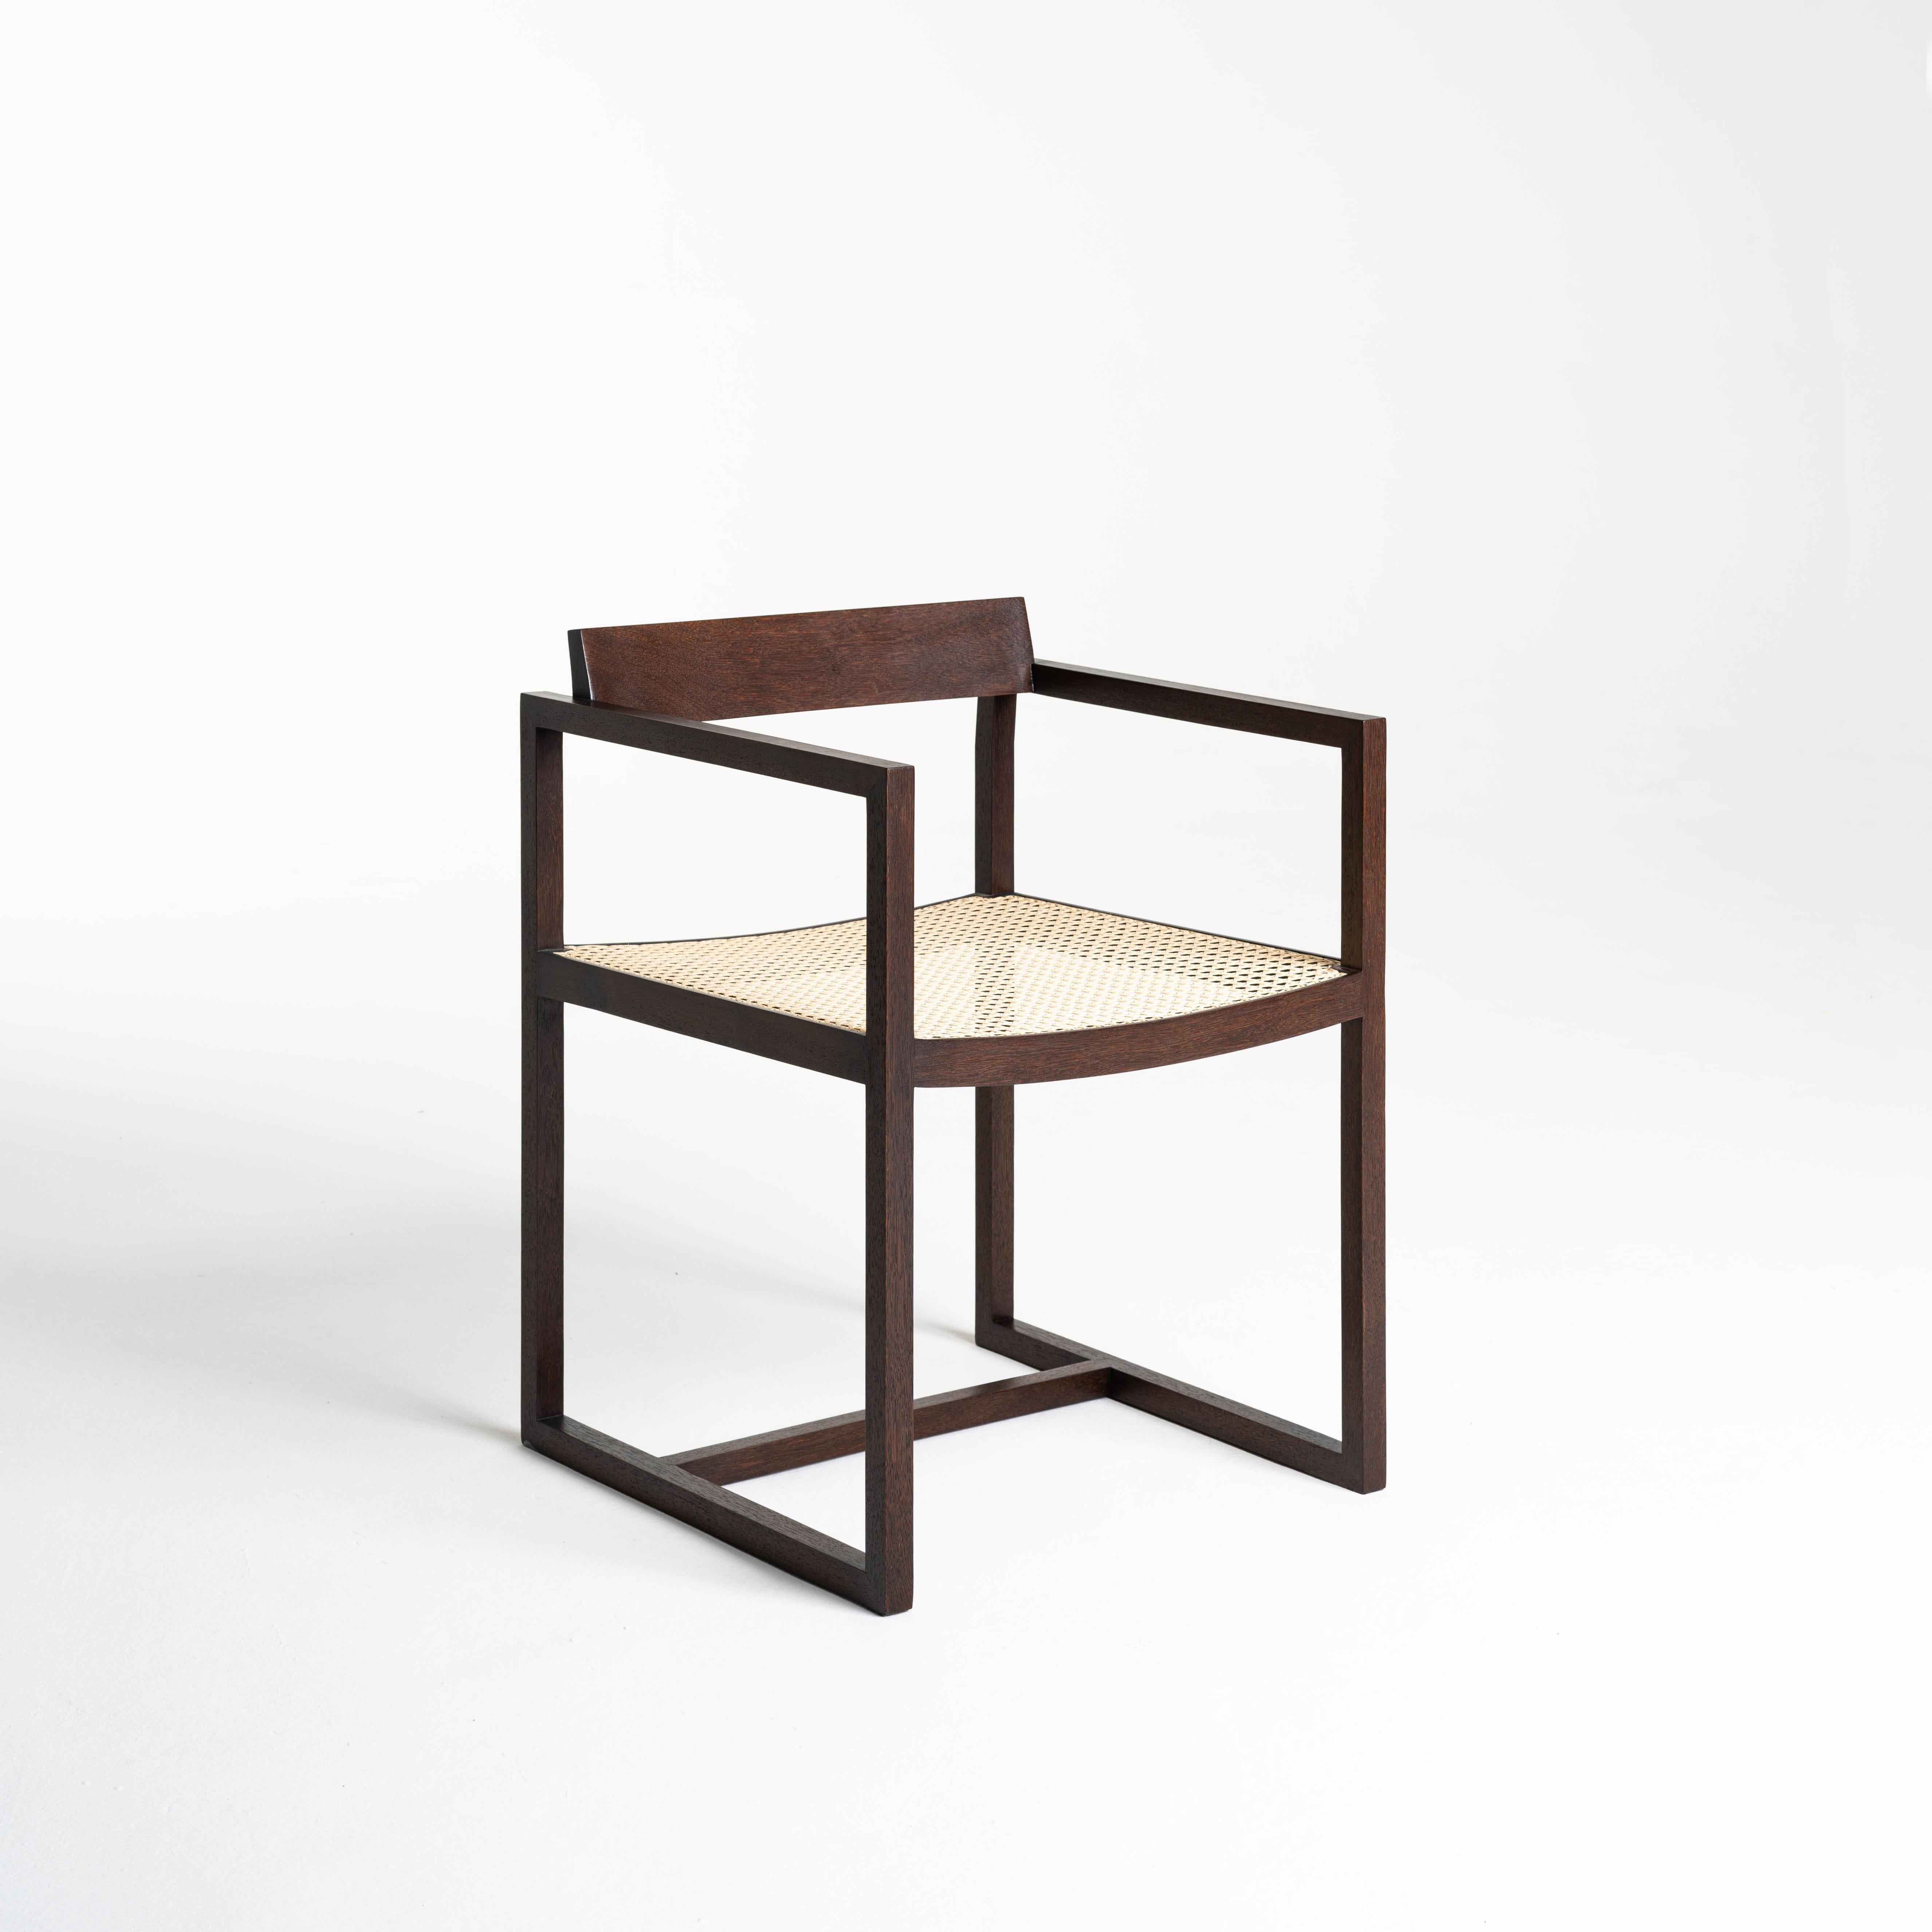 La chaise Amélia a été créée au cours d'une recherche constante par le designer de la transposition directe de la forme dans la matière. La chaleur du bois et la paille appliquée au codage du design, résultent en une pièce concise qui communique le